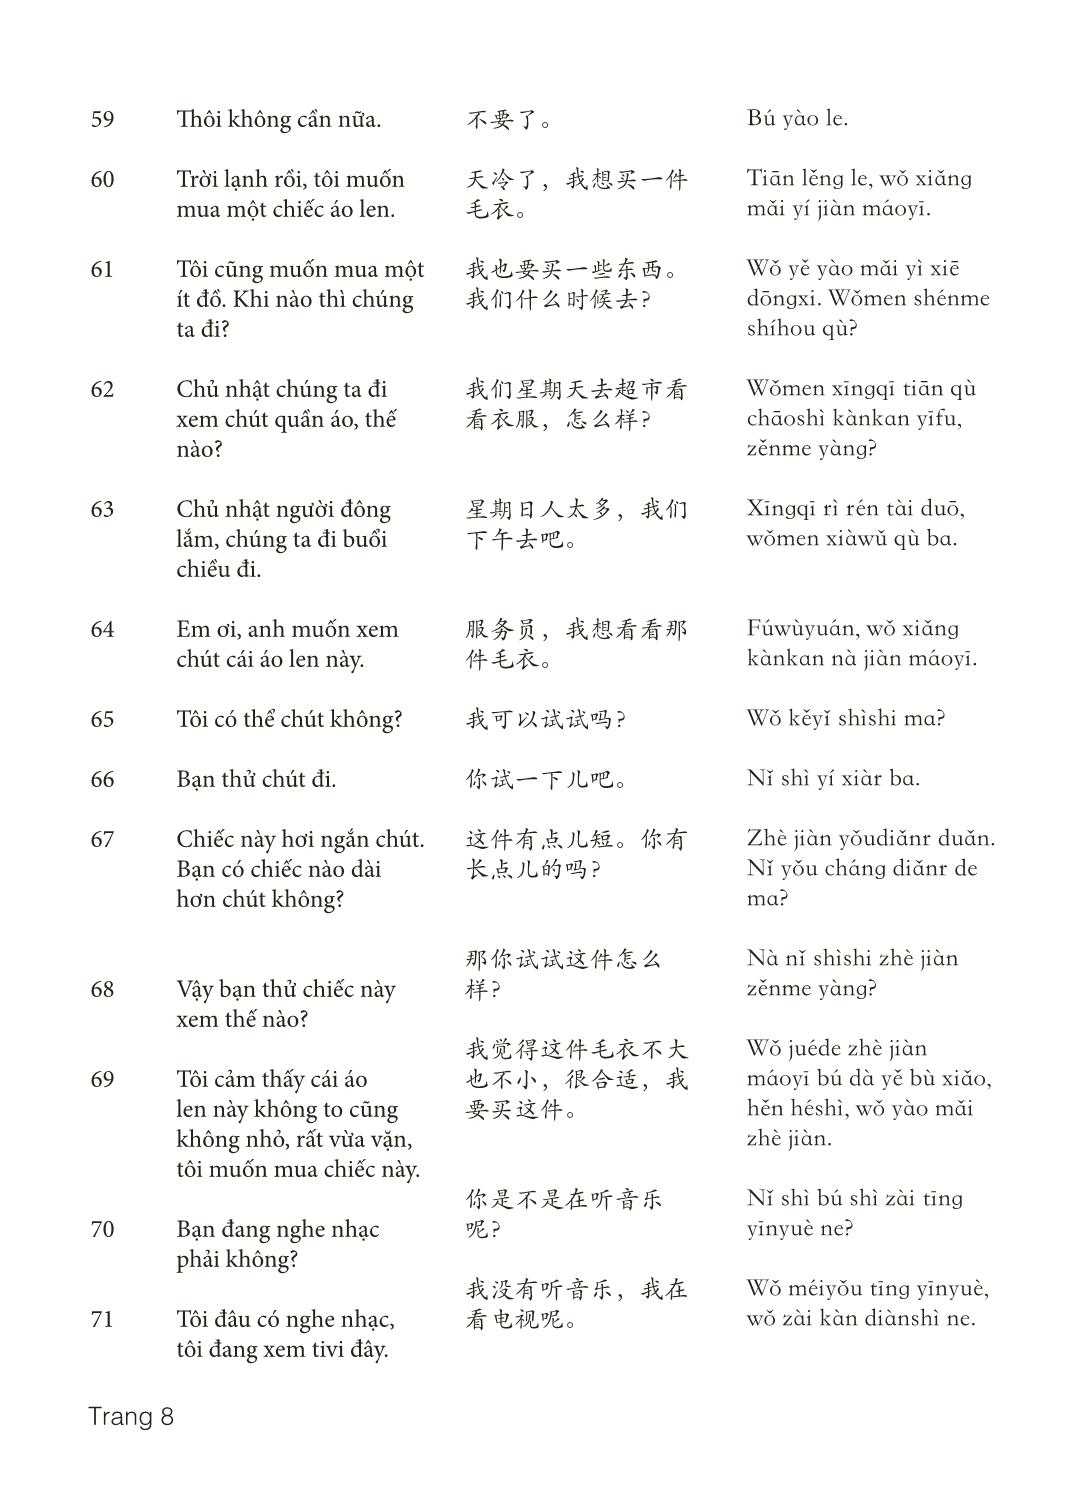 3000 Câu đàm thoại tiếng Hoa - Phần 4 trang 8